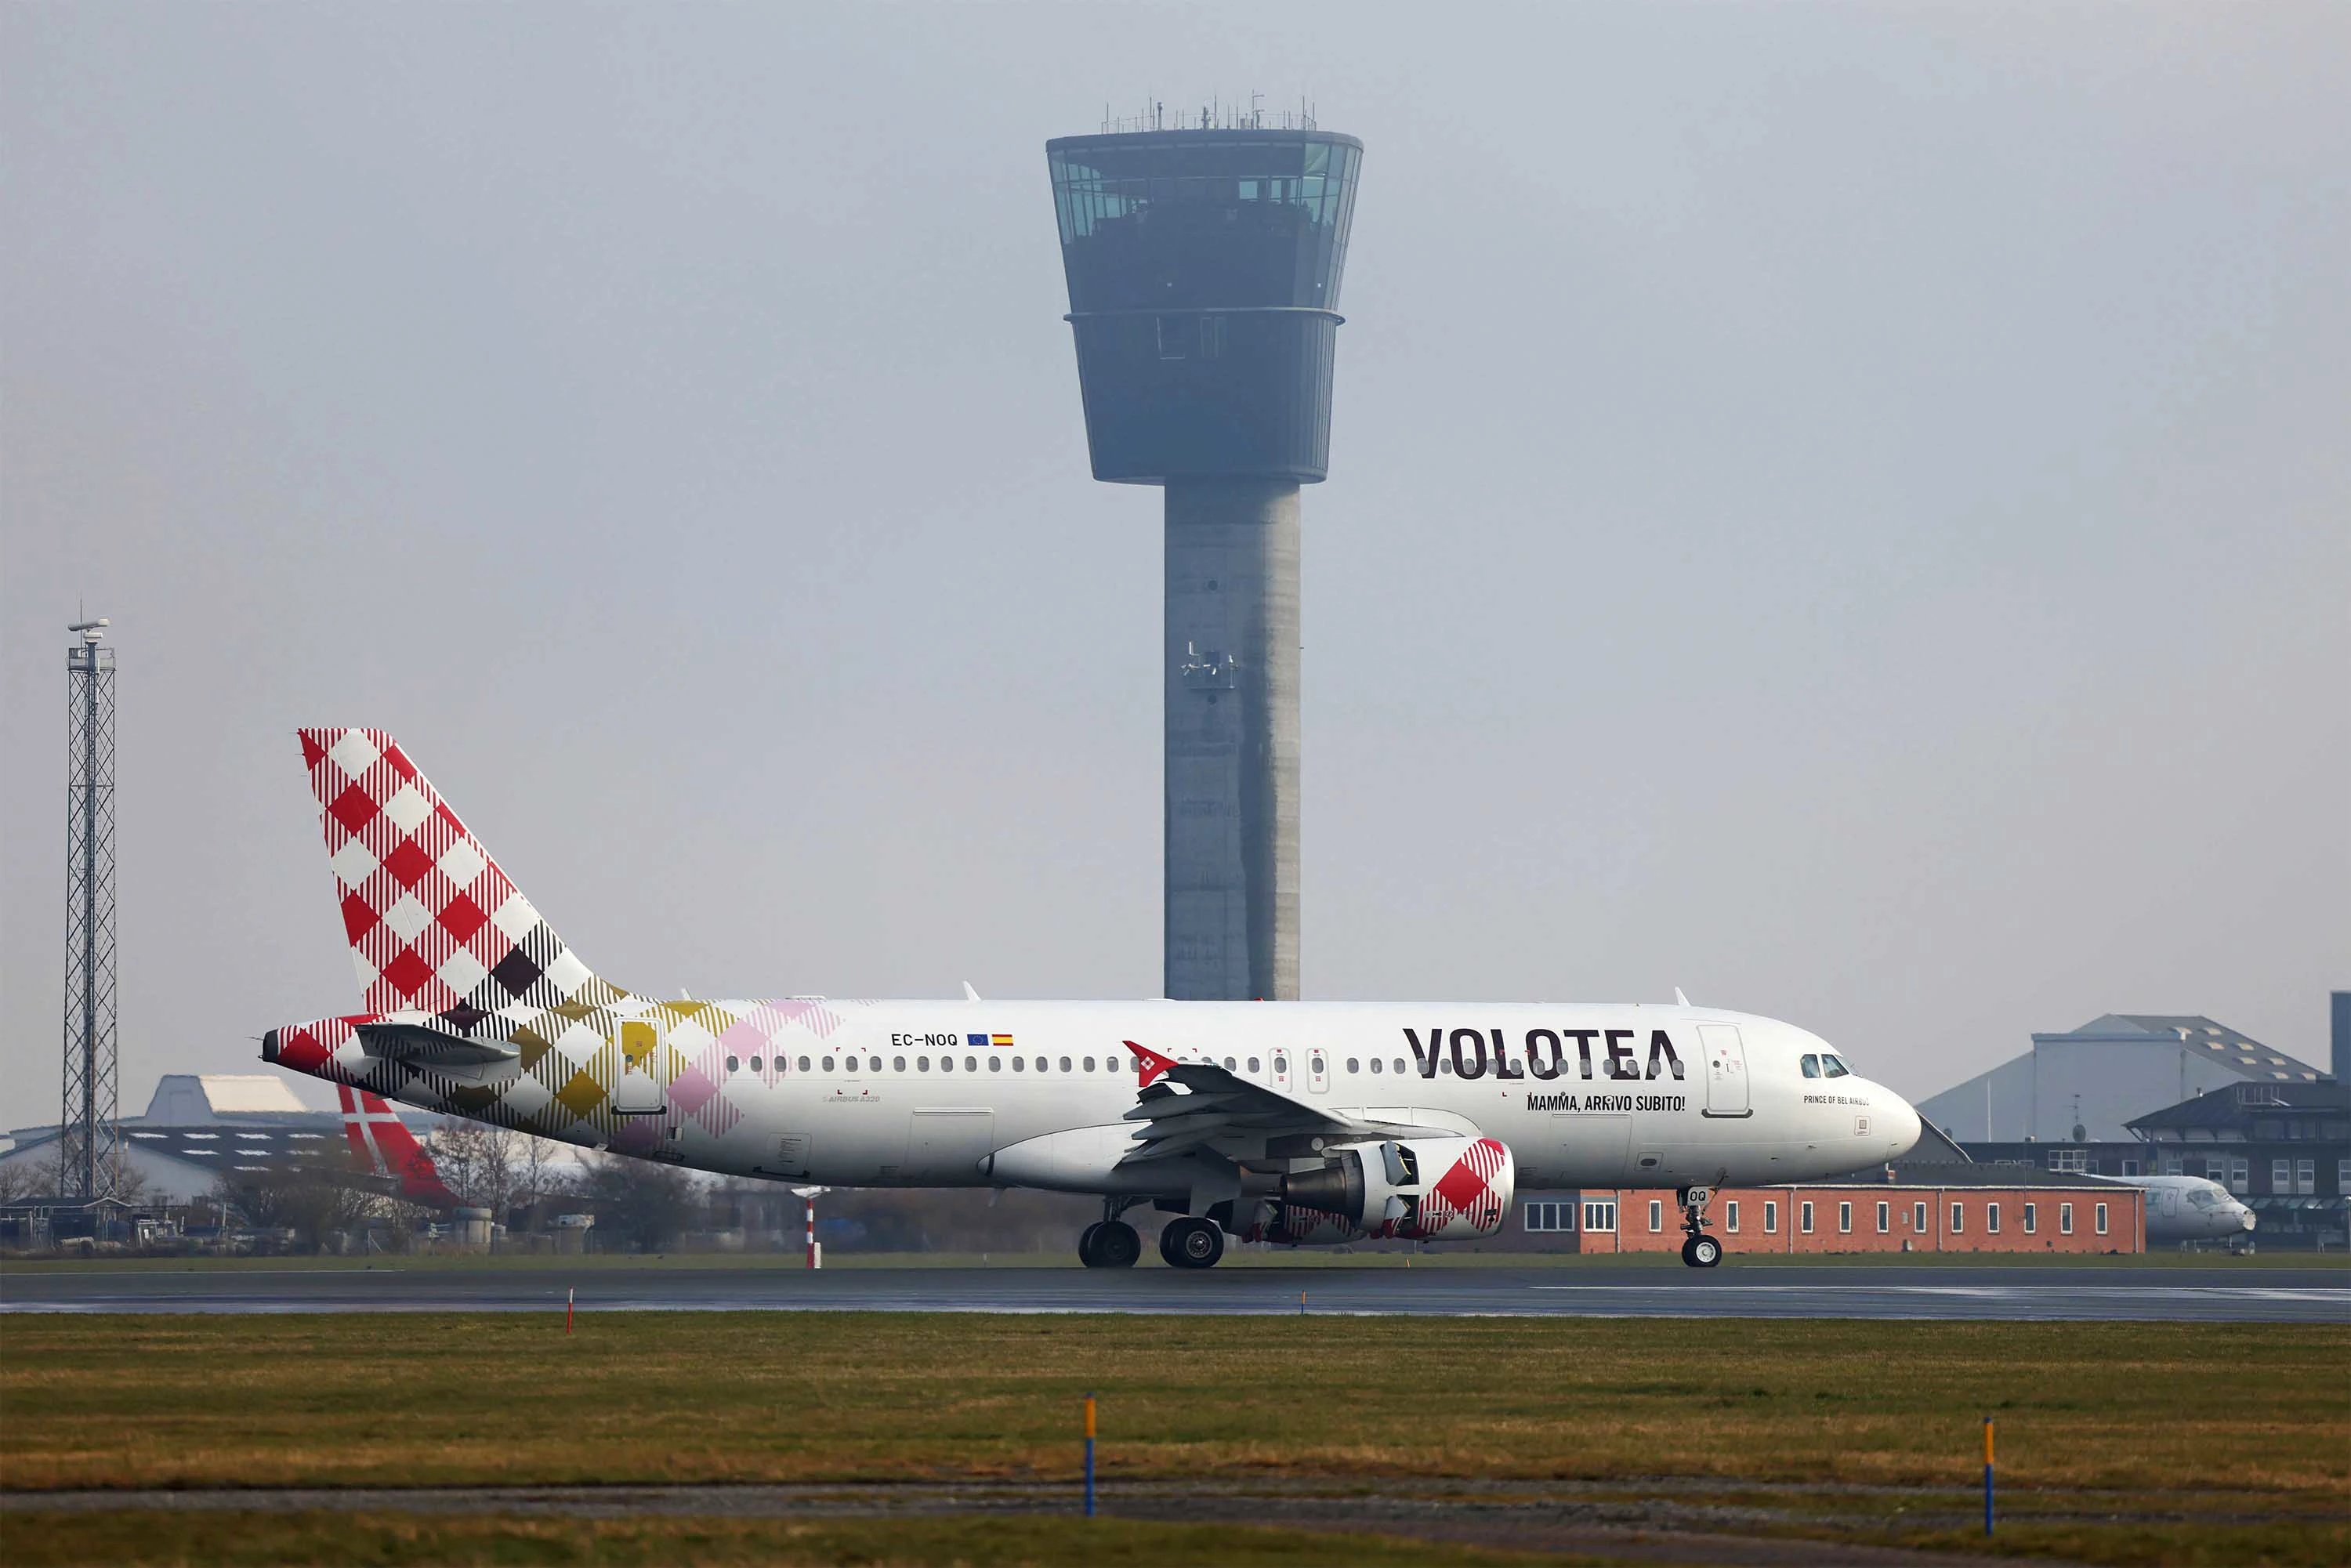 Welcome to Volotea in Copenhagen Airport